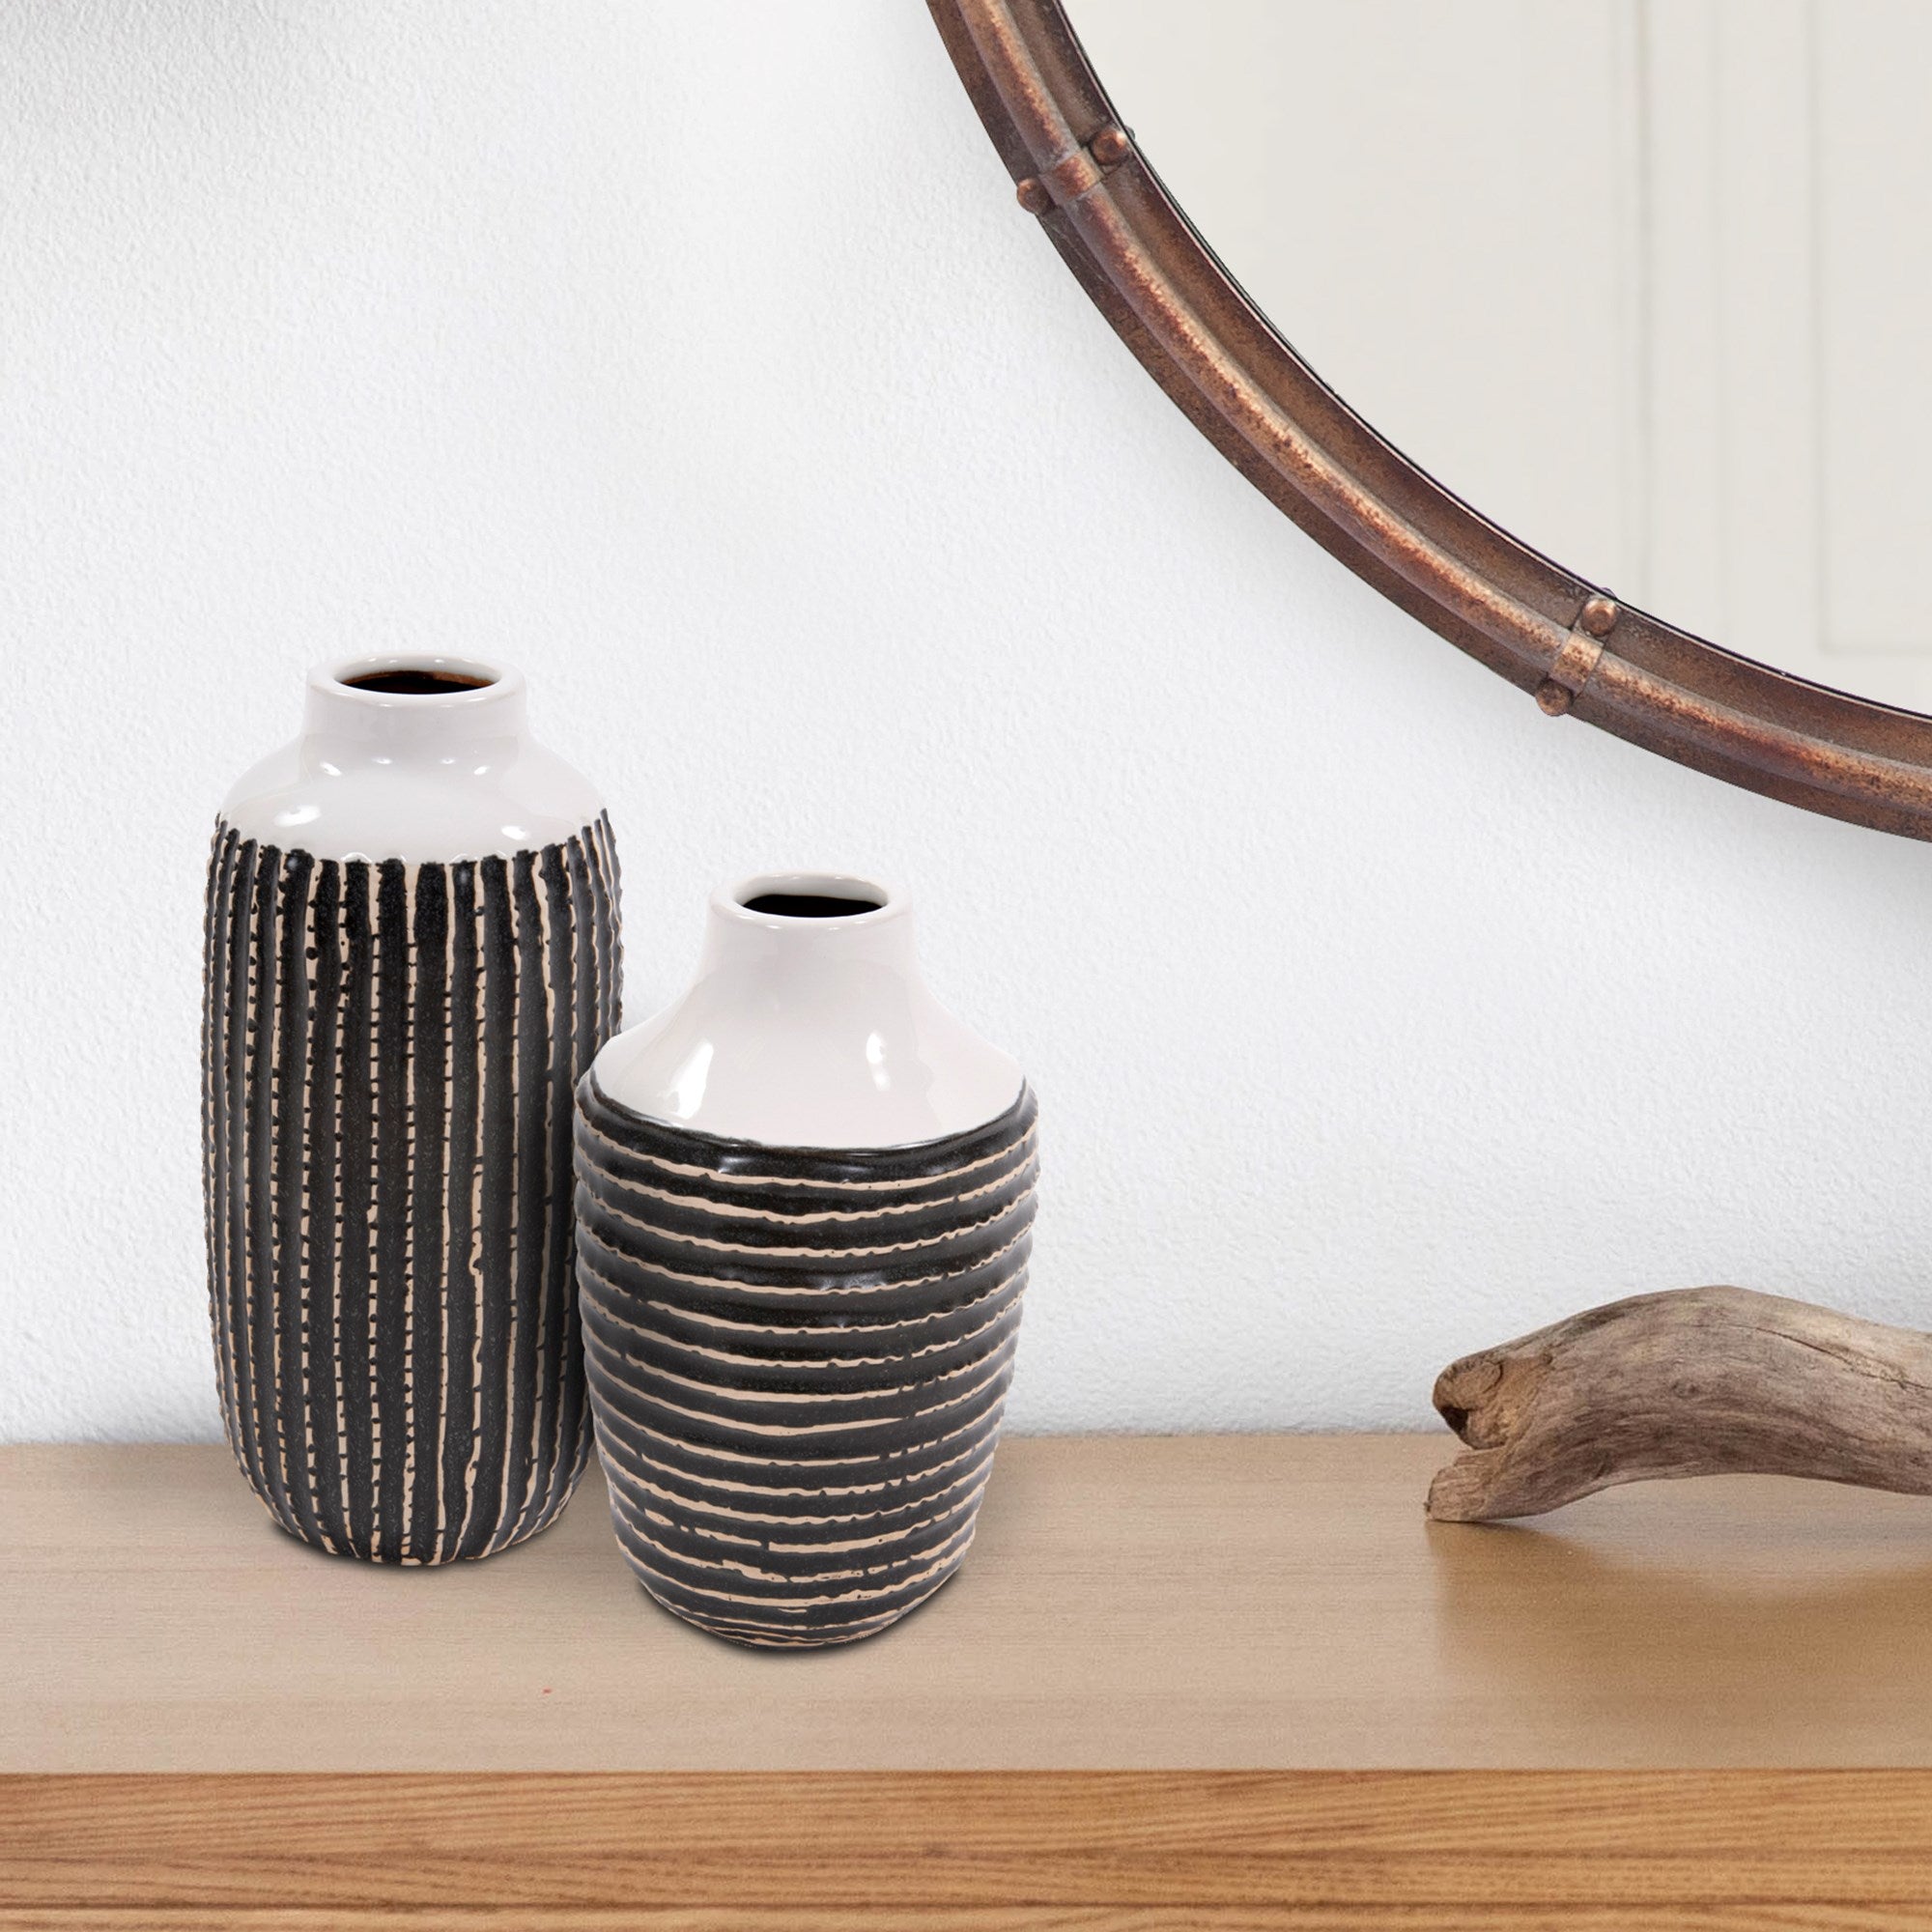 Terra Striped Stoneware Vase, Medium